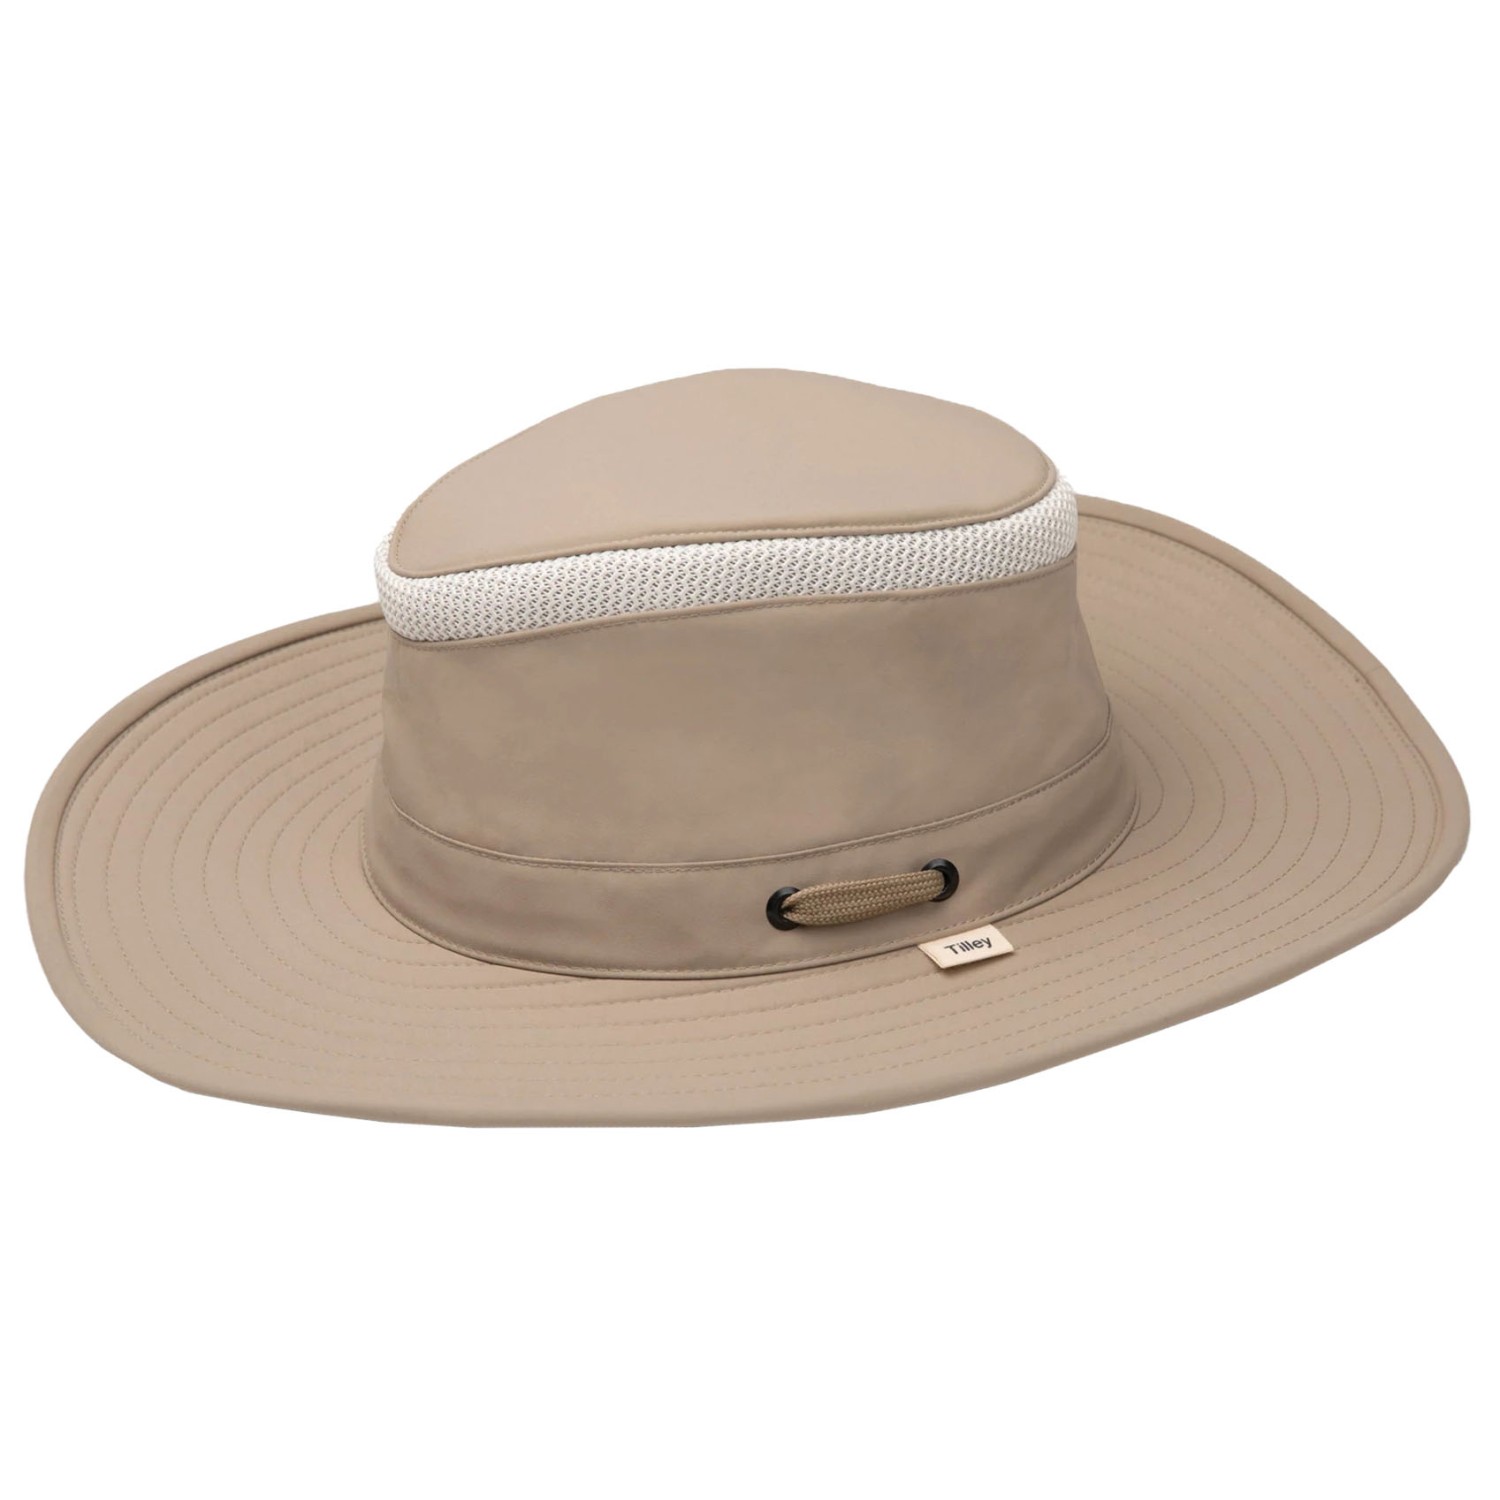 Кепка Tilley Airflo Broad Brim Hat, цвет Taupe летняя вязаная шляпа рыбака с вырезами шляпа от солнца и солнца универсальная летняя шляпа от солнца уличные панамы